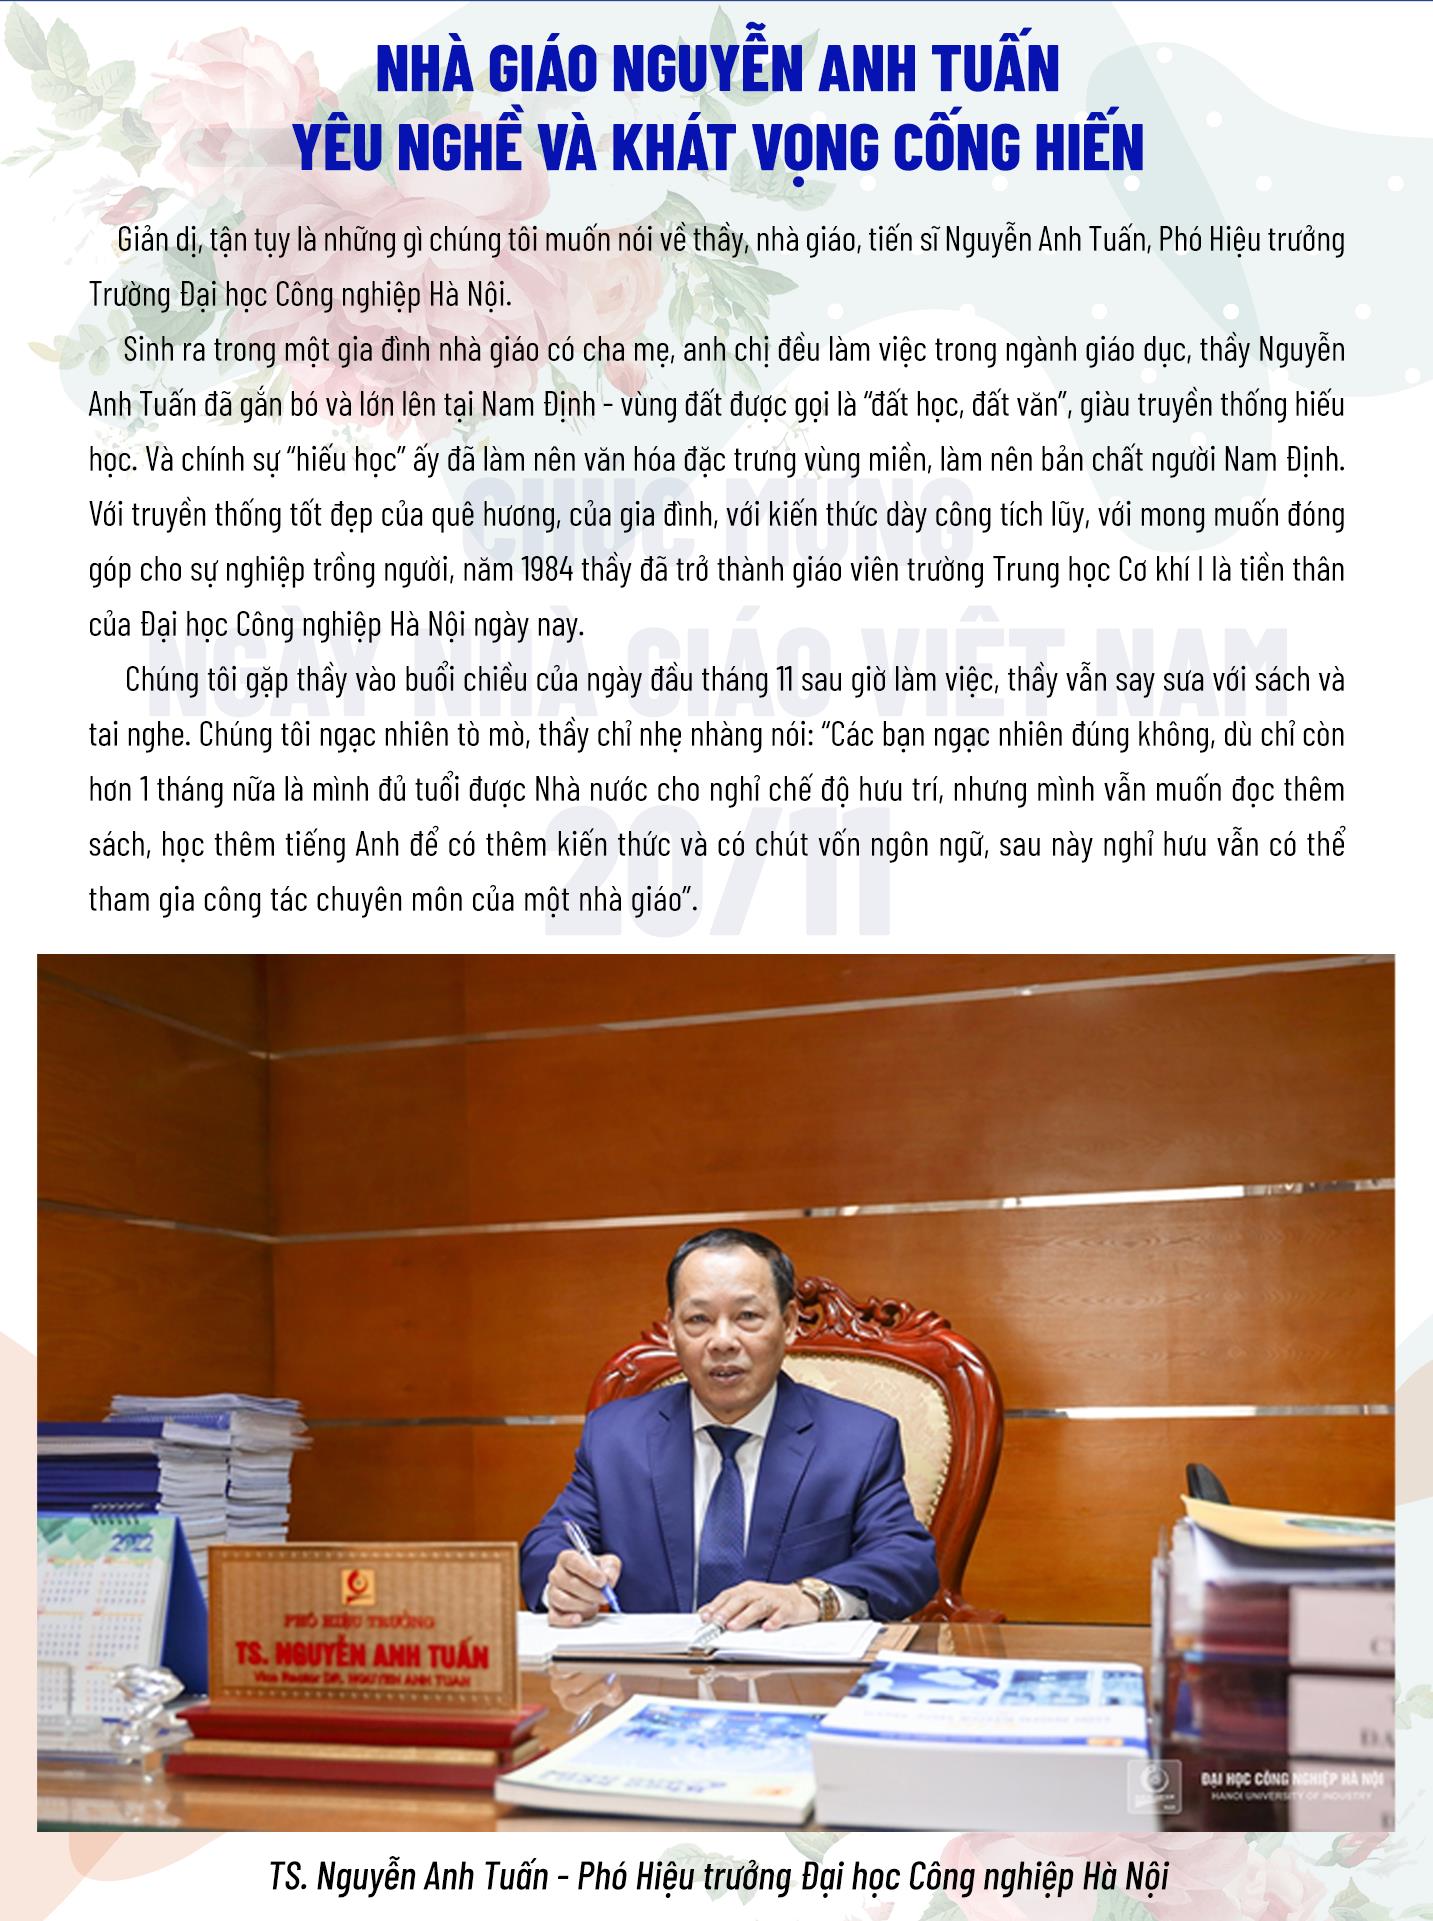 Nhà giáo Nguyễn Anh Tuấn, yêu nghề và khát vọng cống hiến